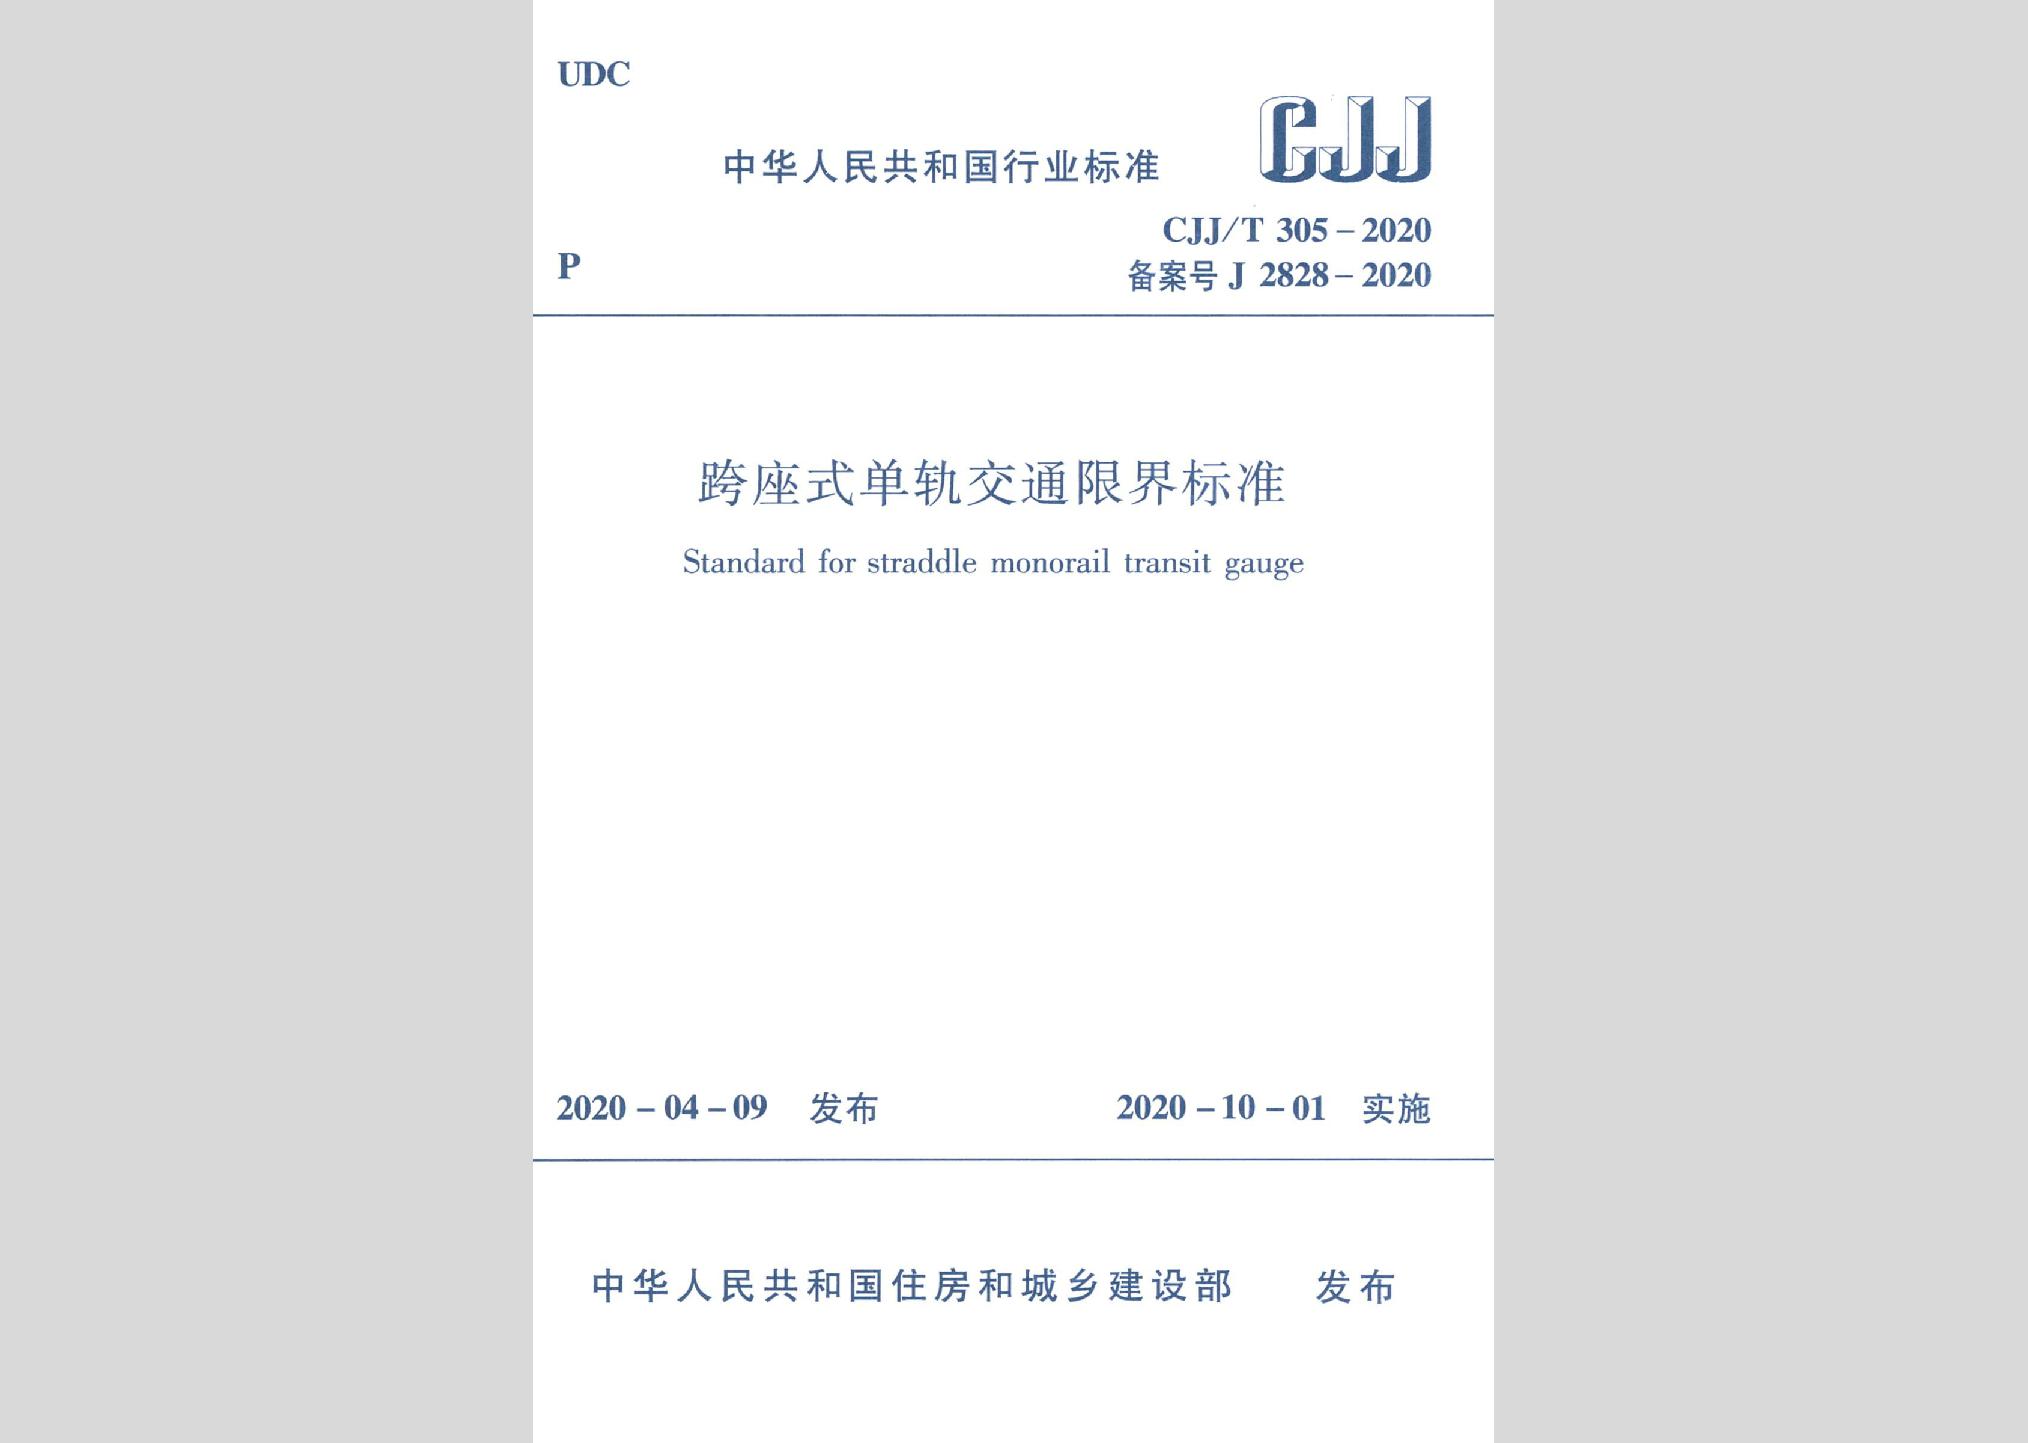 CJJ/T305-2020：跨座式单轨交通限界标准